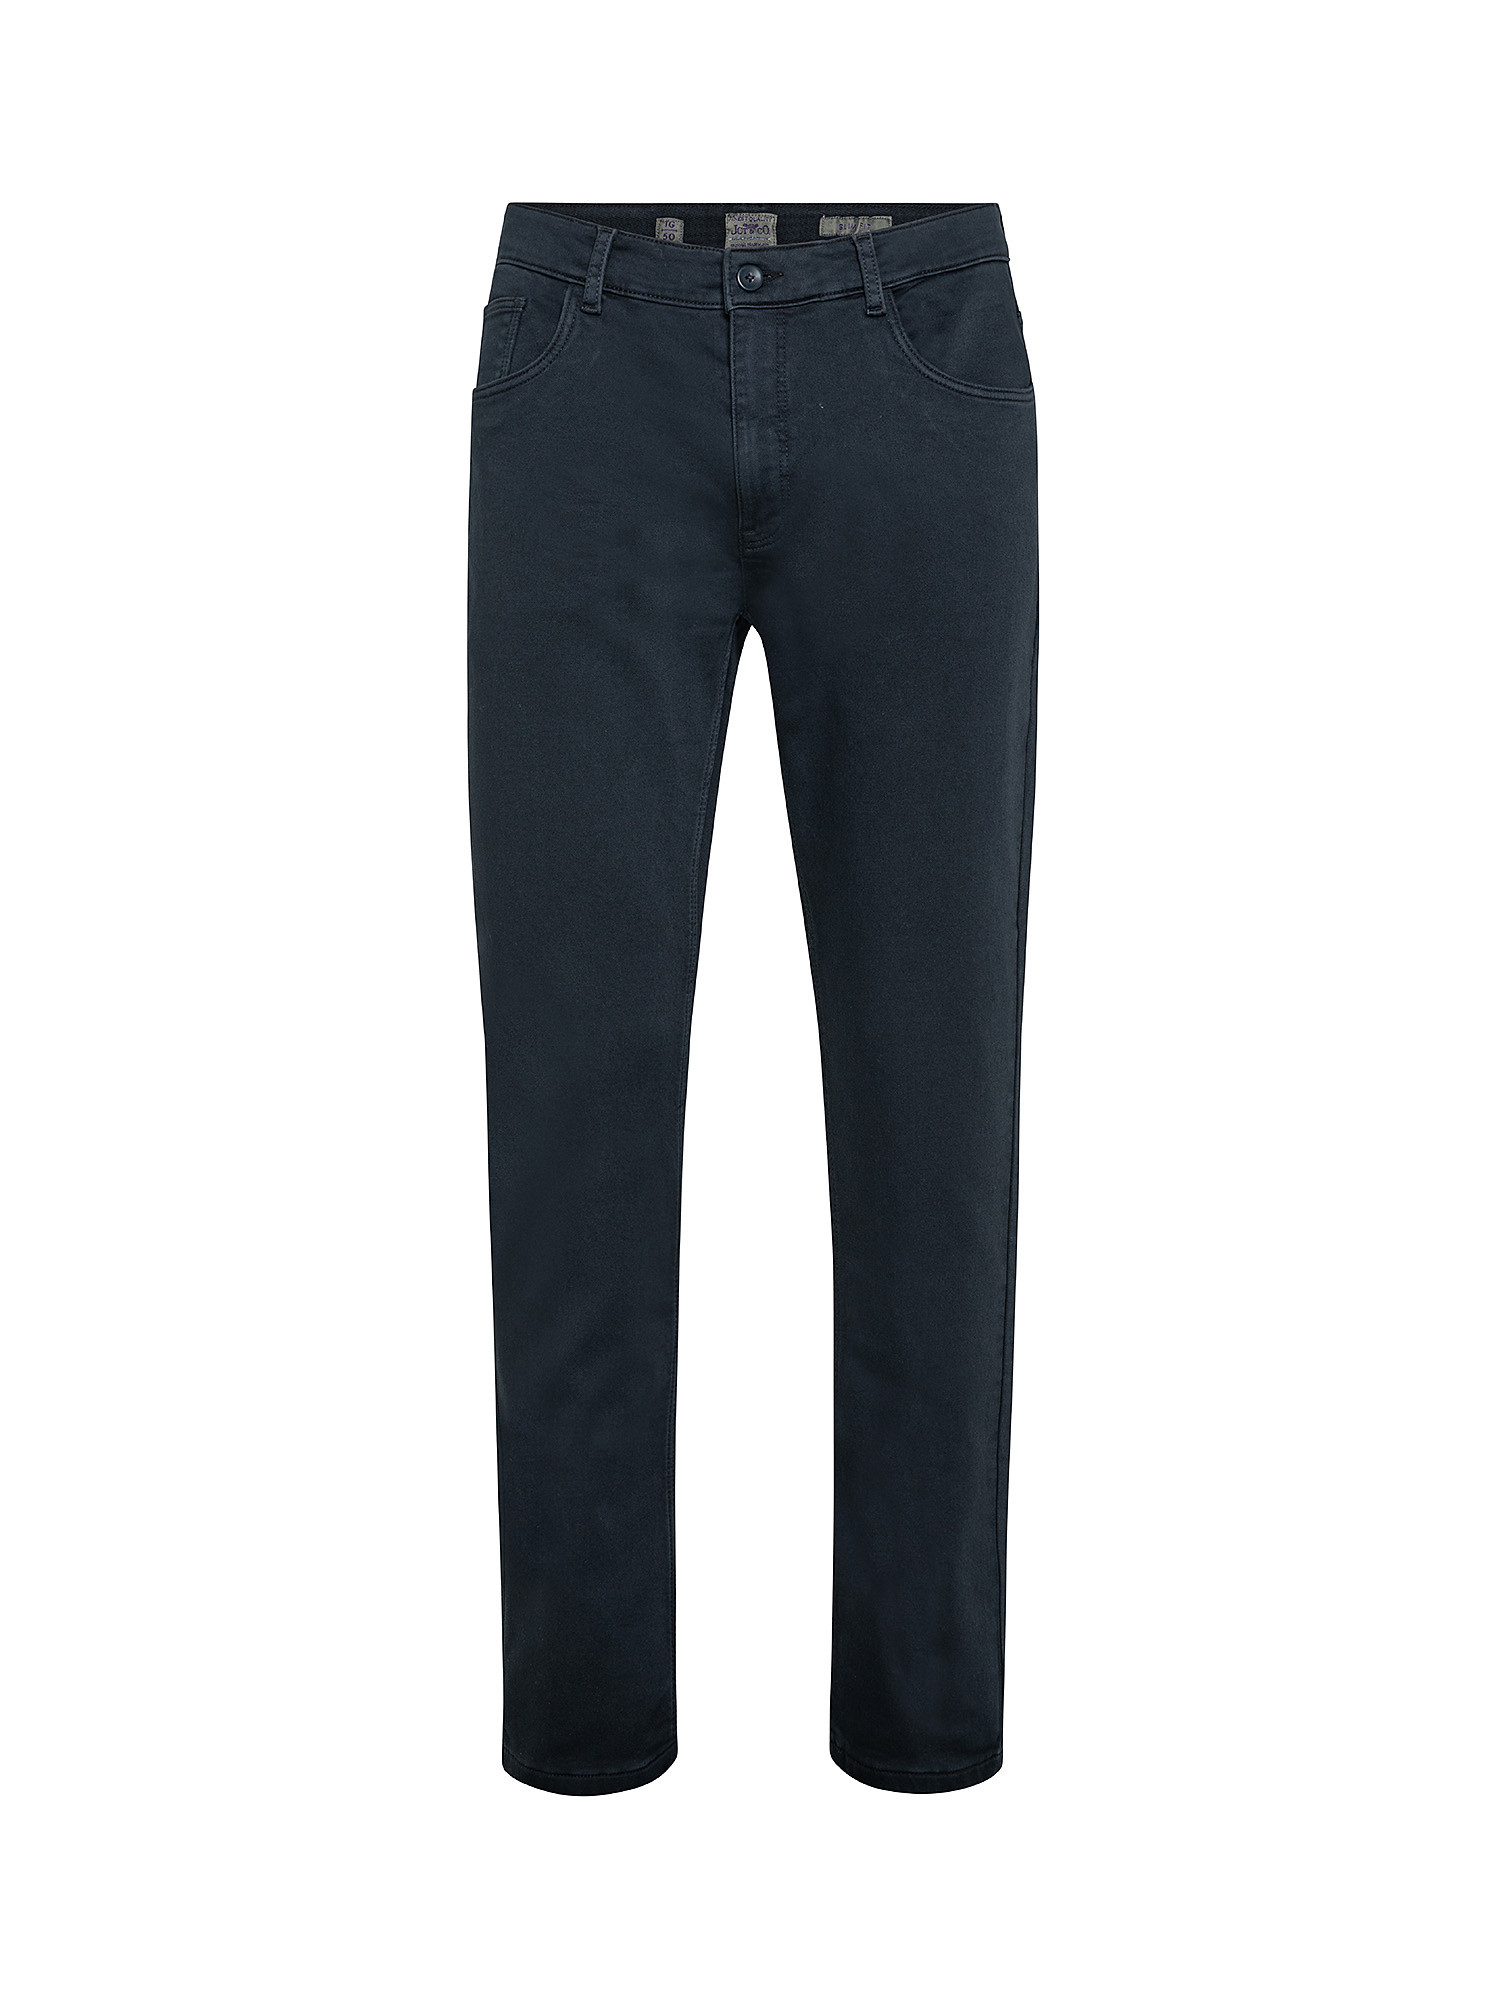 Pantalone 5 tasche slim in felpa, Blu, large image number 0